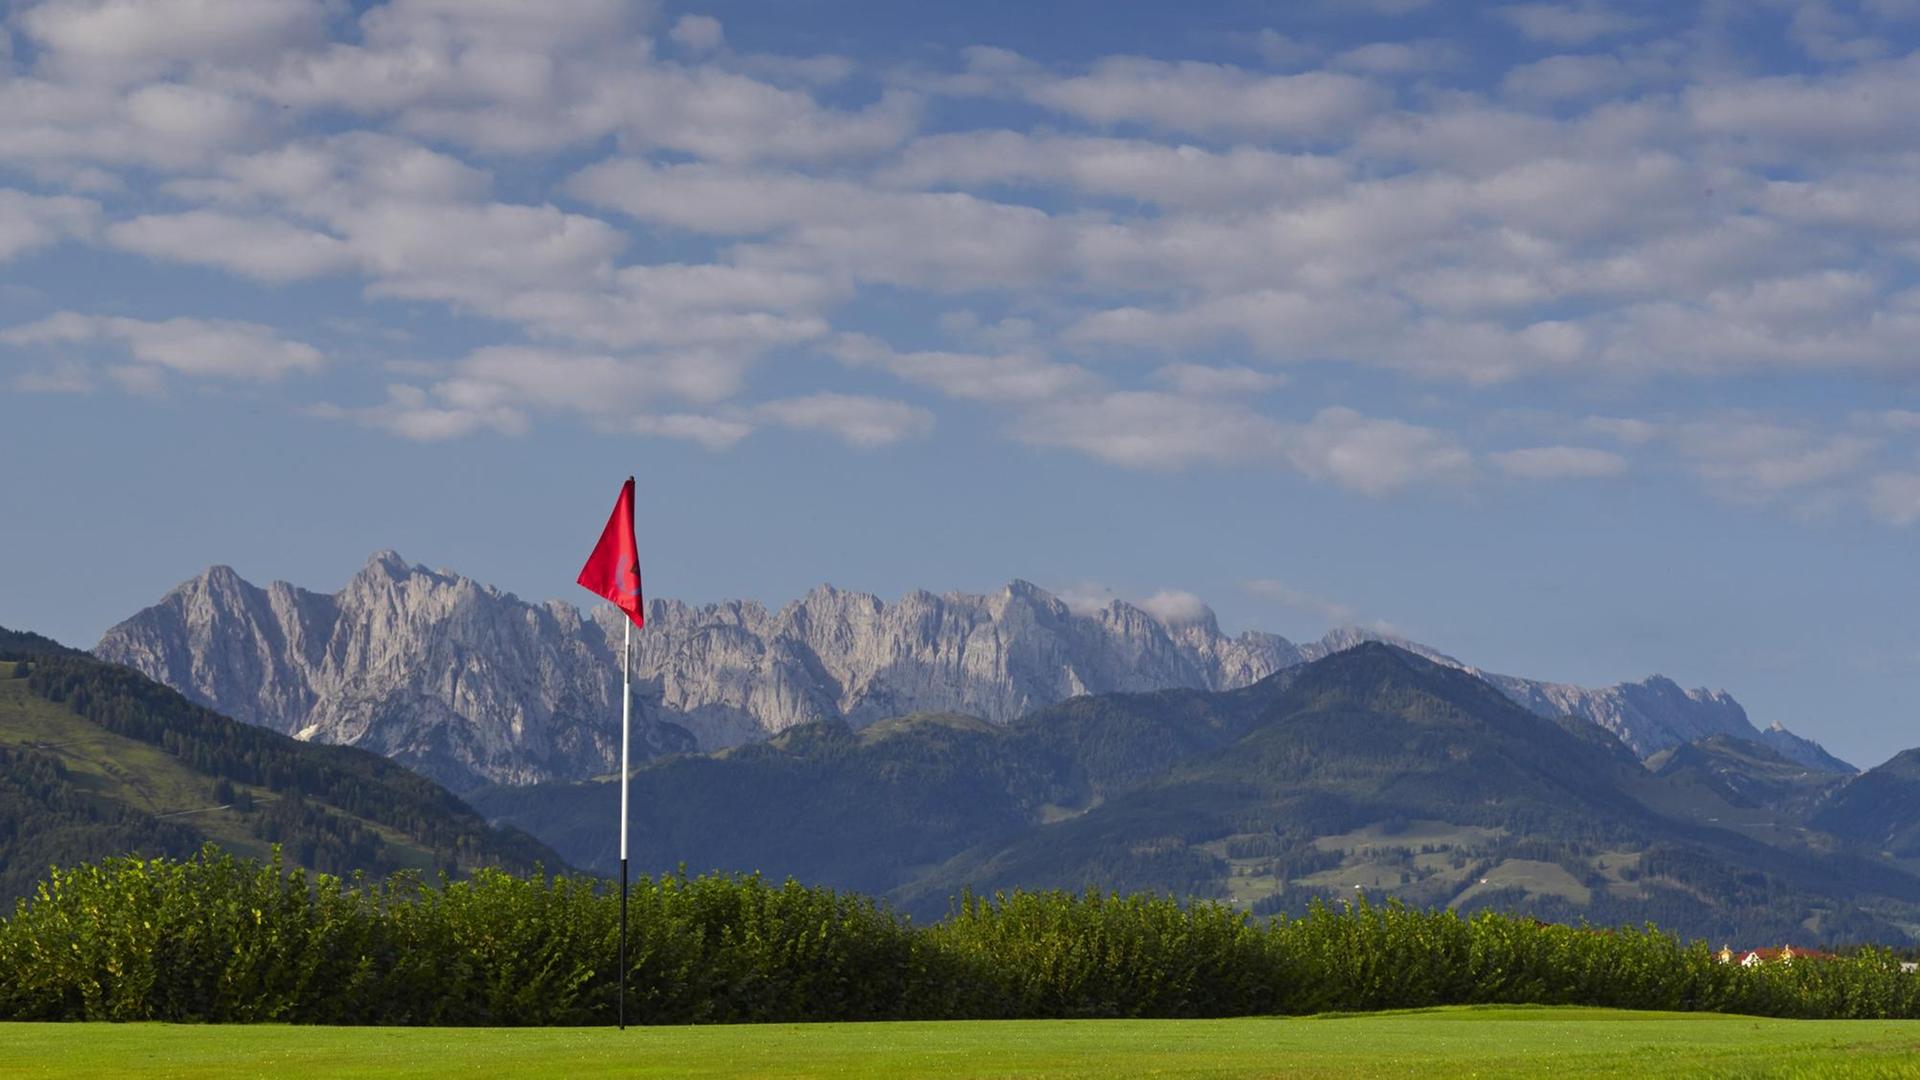 Der Rasen eines Golfplatzes vor der Kulisse der Alpen